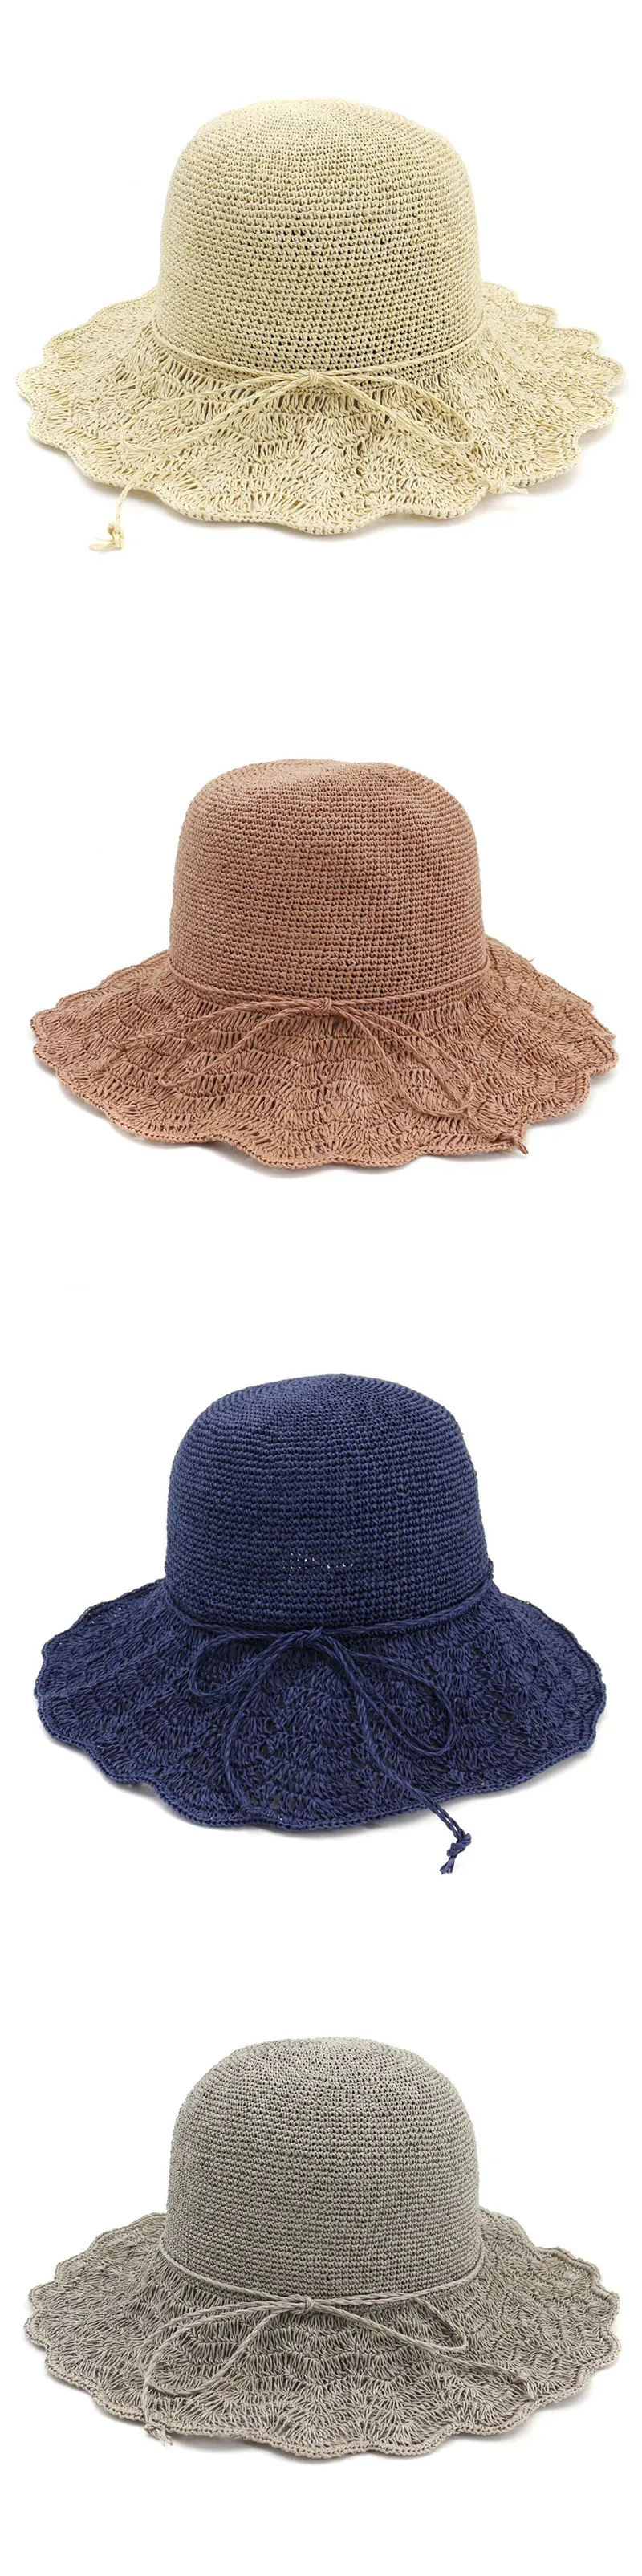 SILOQIN Корейский Японский Стиль специальной тонкой вытканная трава леди соломенная складная шляпа корзина ручной работы Шапки Элегантная